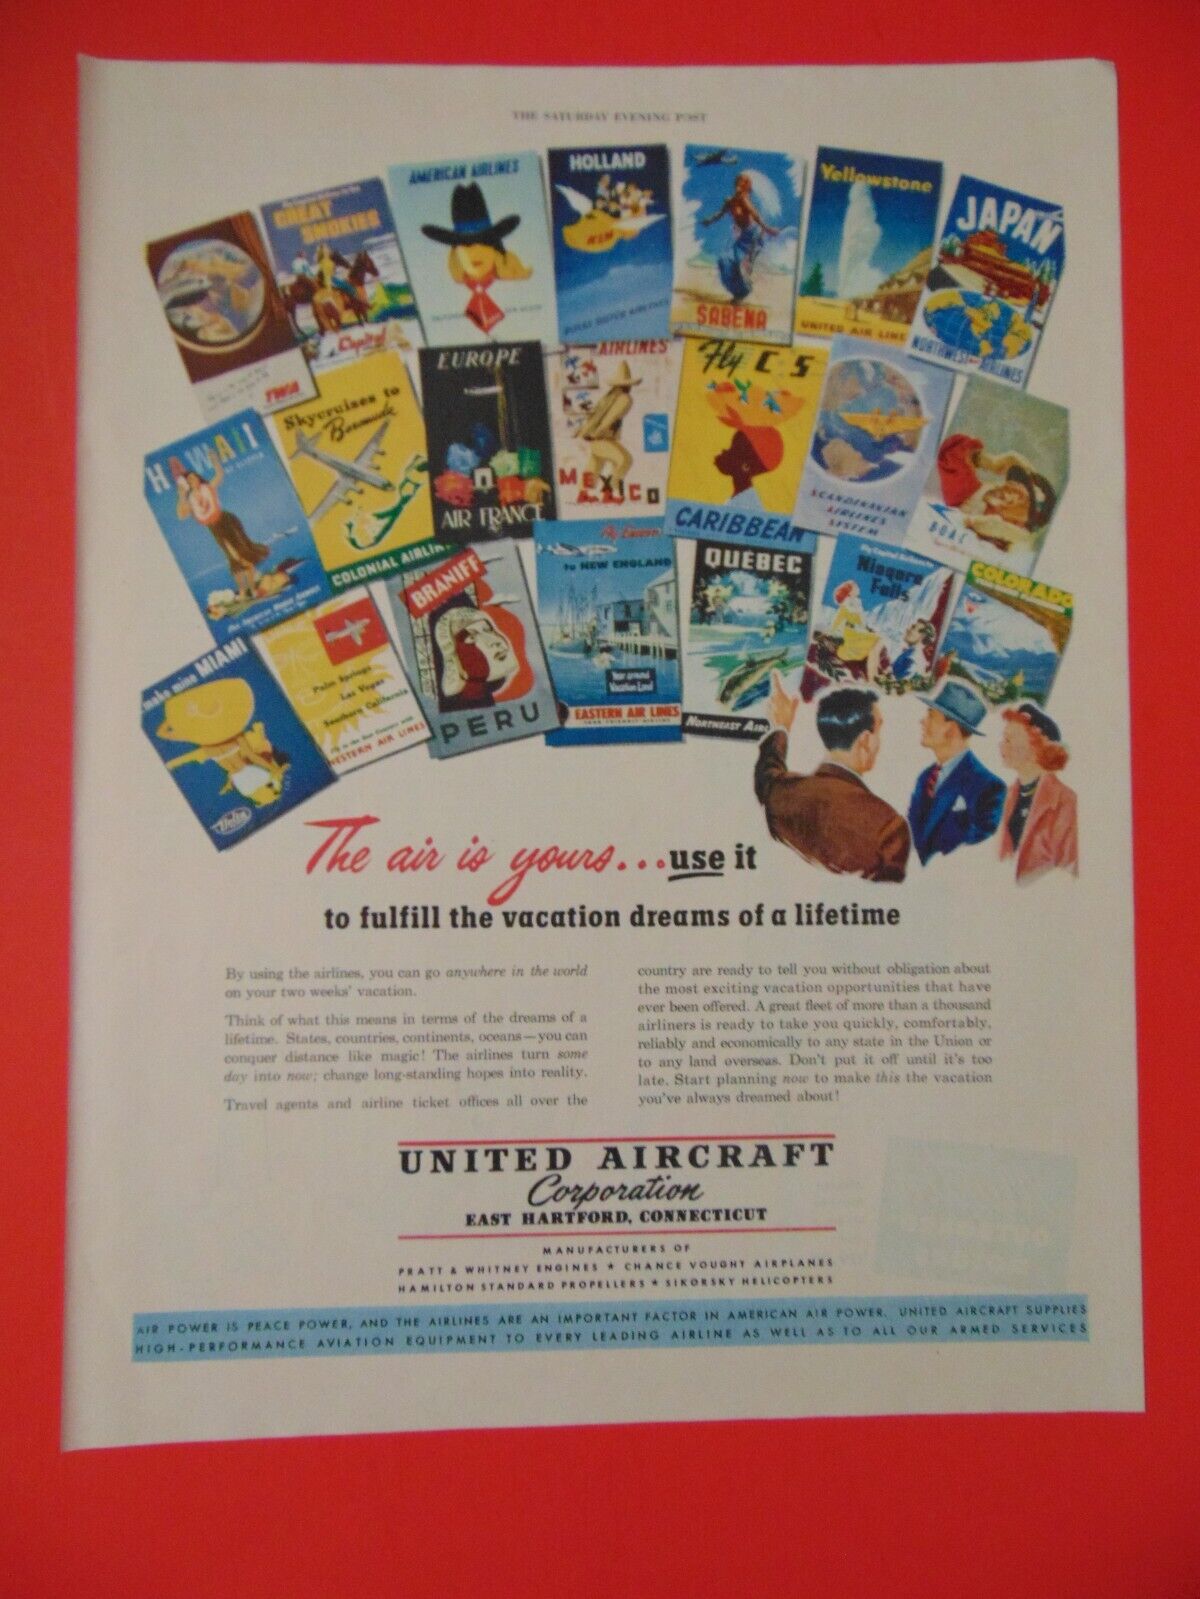 1949 UNITED AIRCRAFT CORPORATION Fulfill Vacation Dreams art print ad